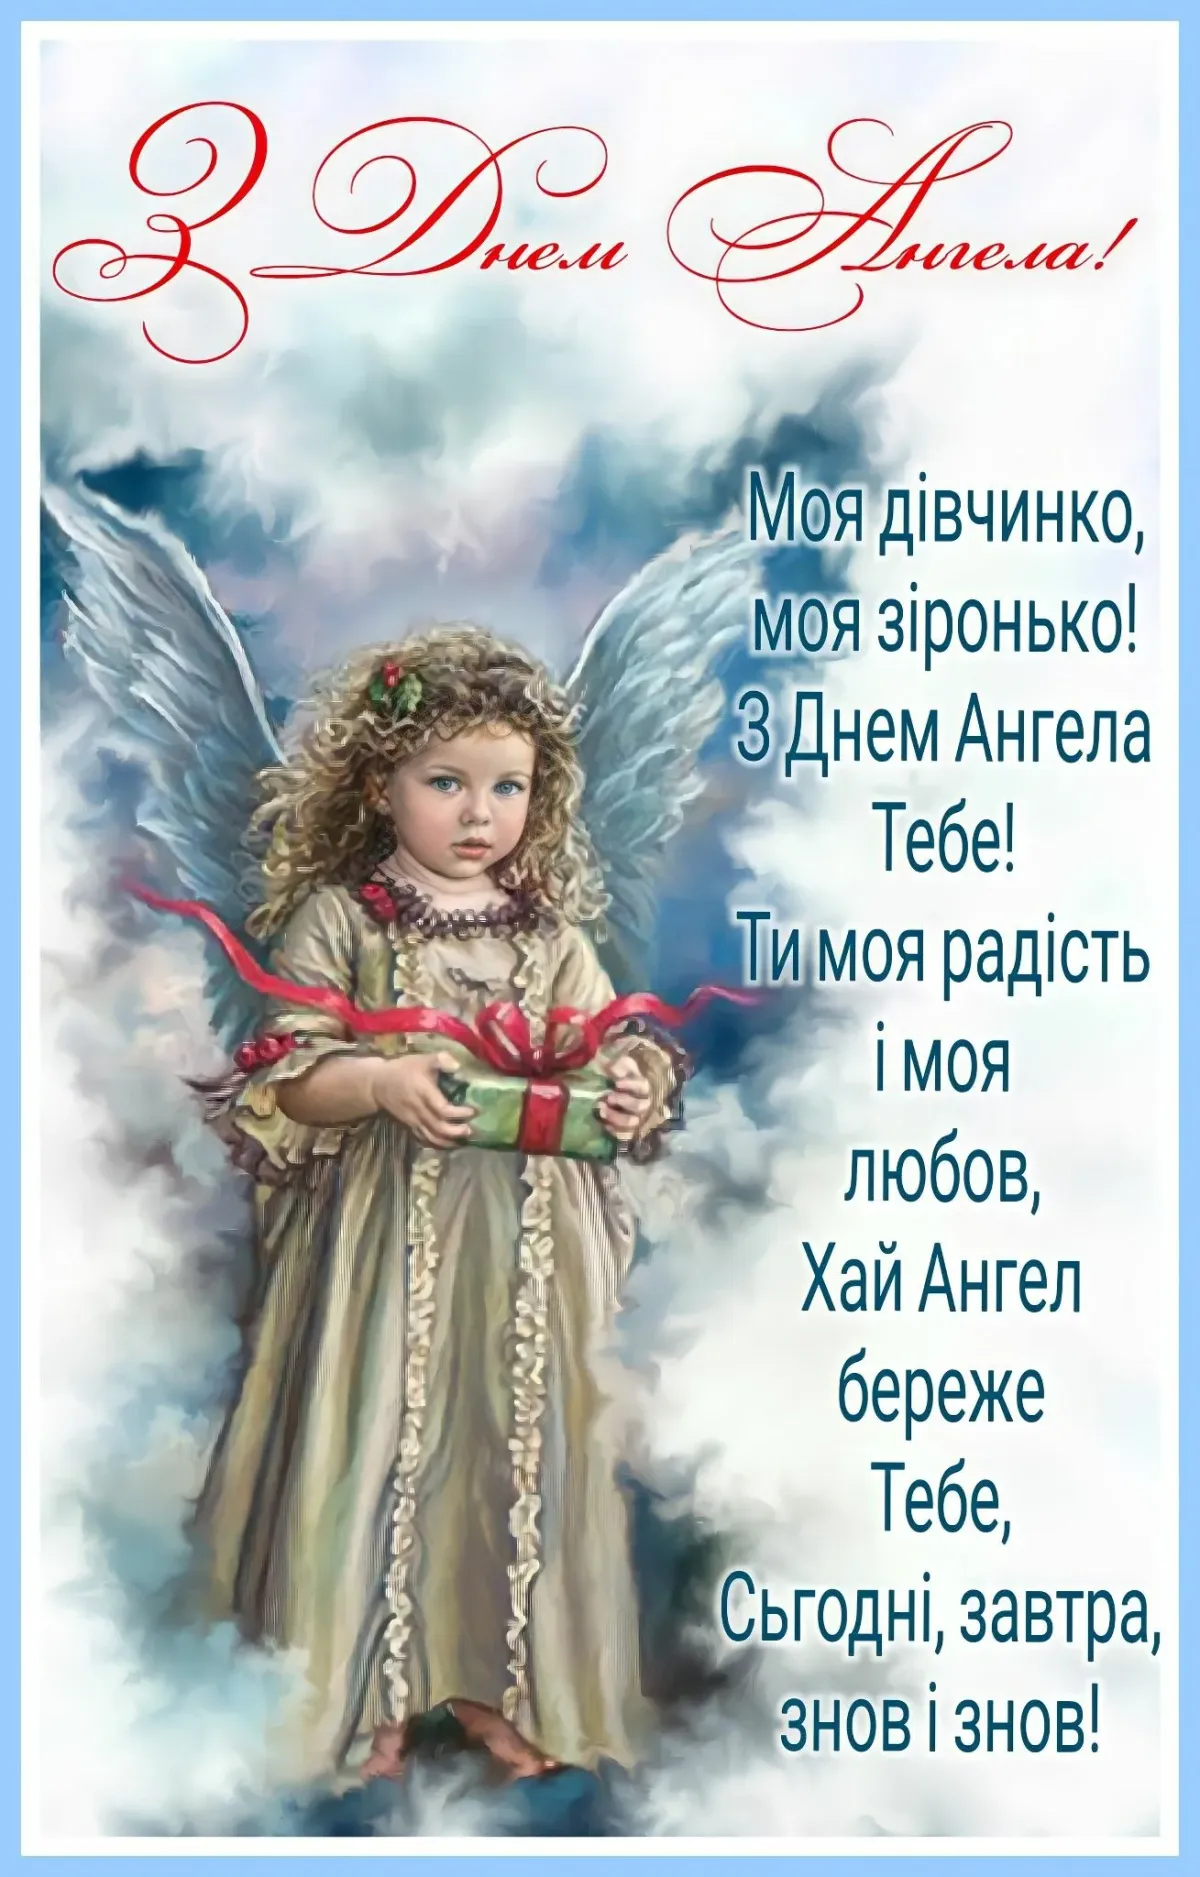 Именины аллы по православному календарю. День ангела.